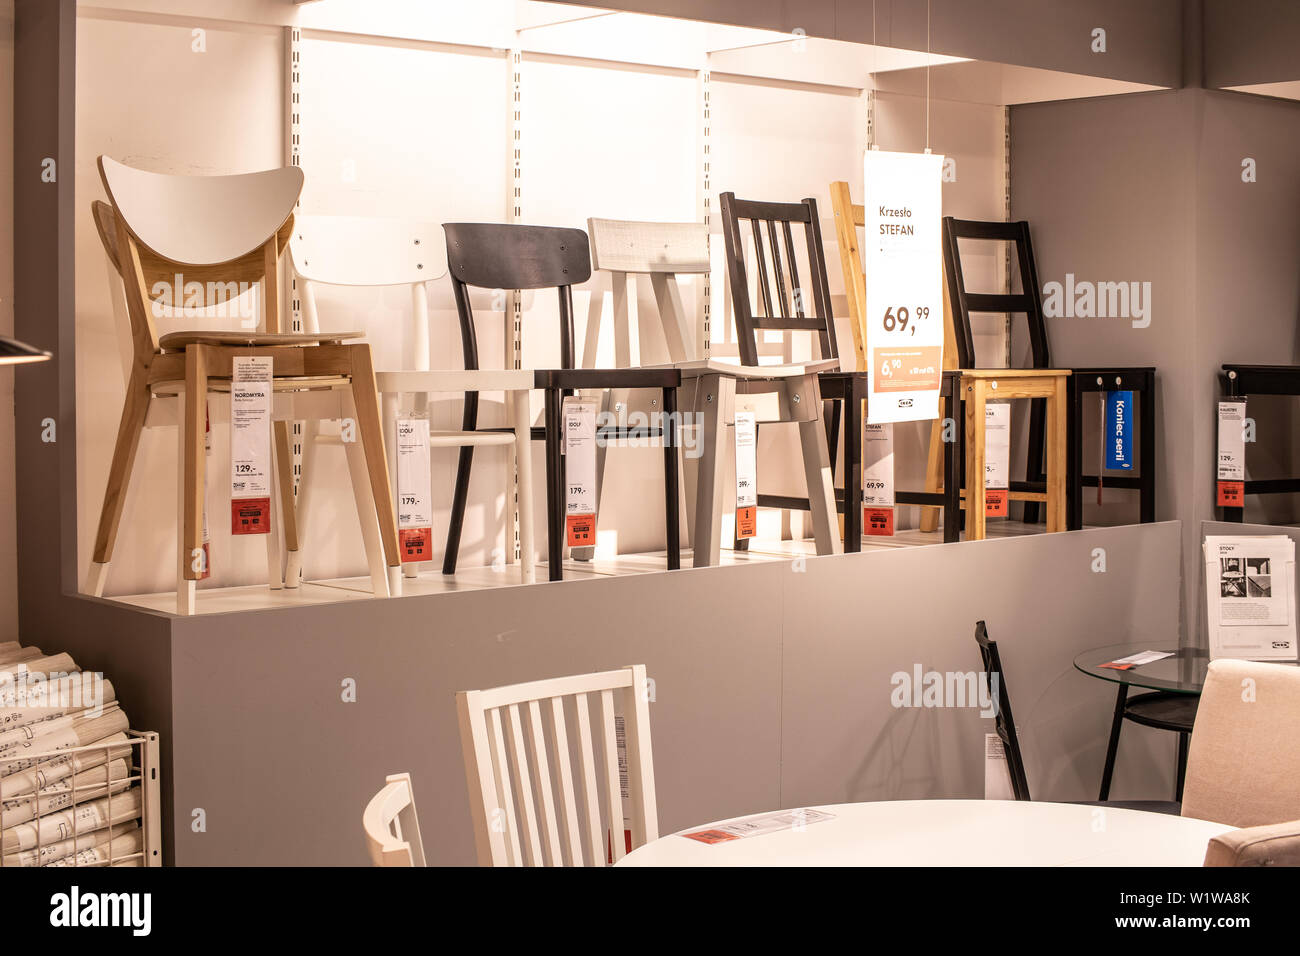 Lodz, Pologne, Jan 2019 intérieur exposition magasin IKEA. Table à manger moderne chaises de la table. IKEA vend des meubles prêts-à-assembler, accessoires Accueil Banque D'Images